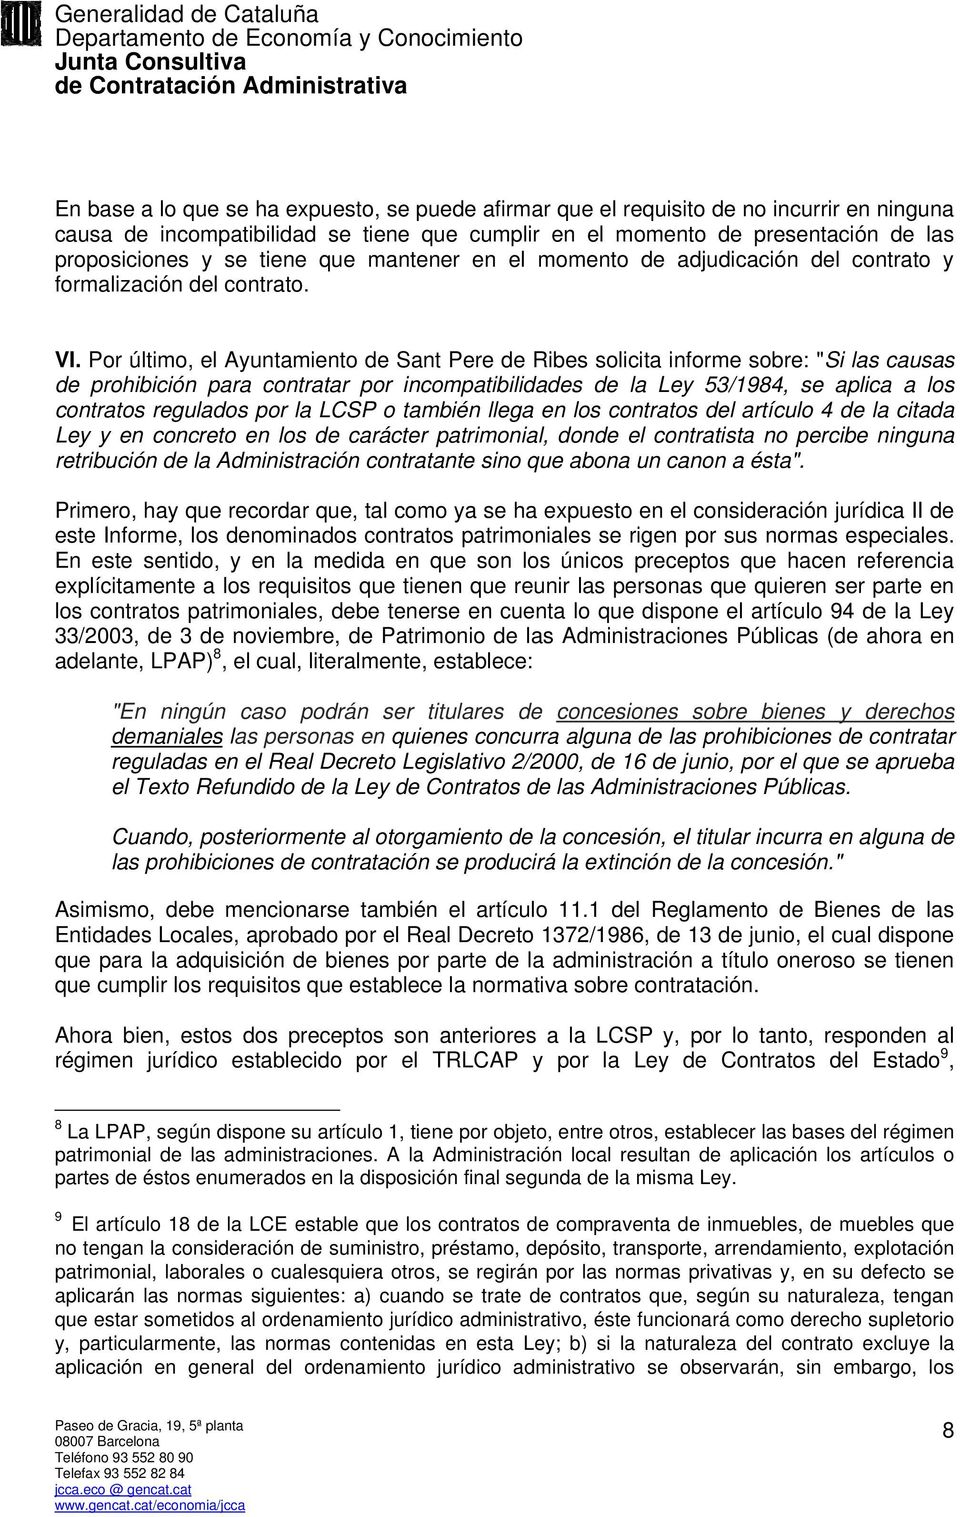 Por último, el Ayuntamiento de Sant Pere de Ribes solicita informe sobre: "Si las causas de prohibición para contratar por incompatibilidades de la Ley 53/1984, se aplica a los contratos regulados